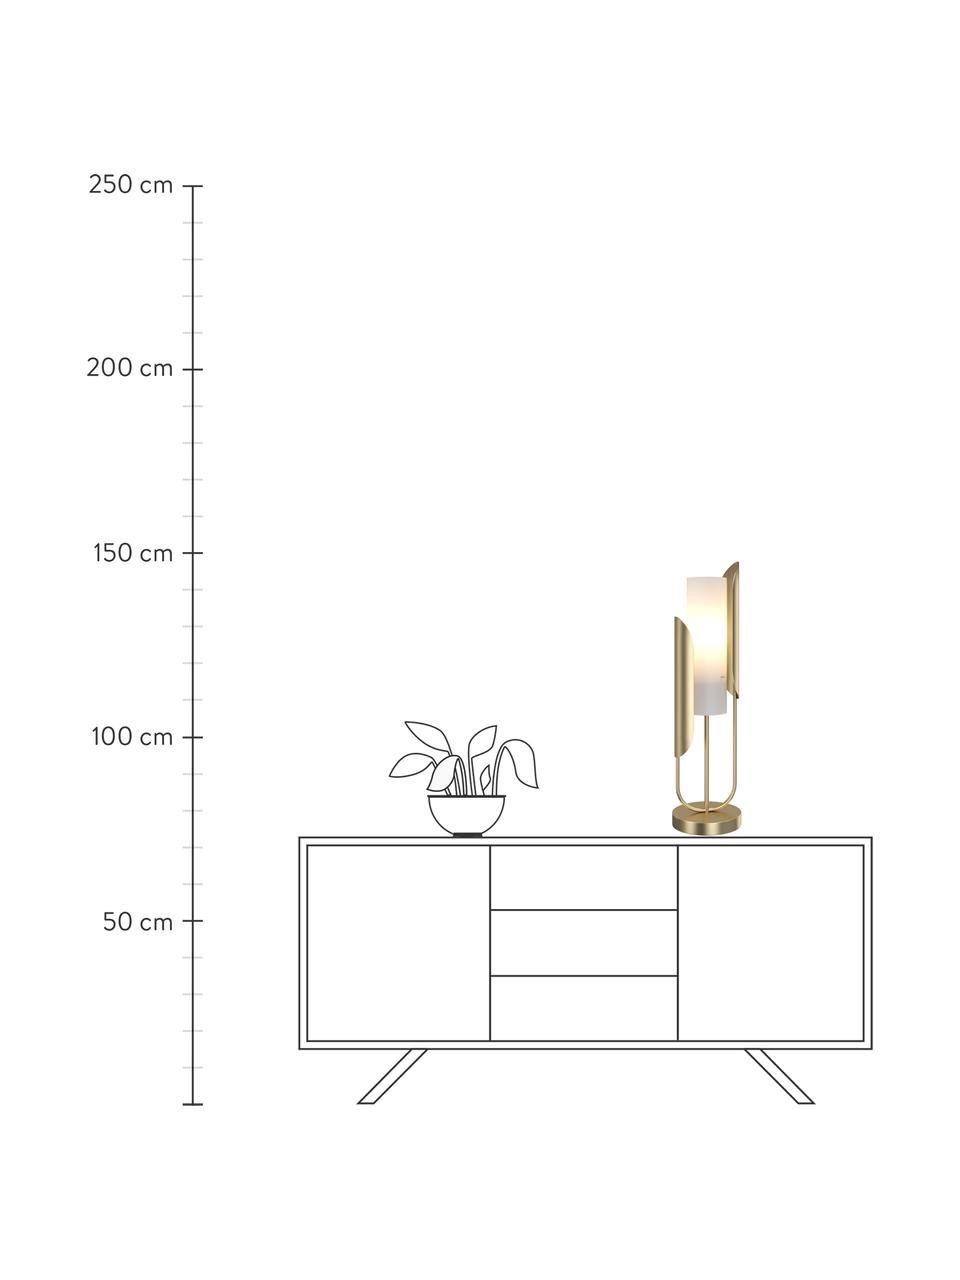 Tischlampe Сipresso in Gold, Lampenschirm: Glas, Goldfarben, Weiss, Ø 20 x H 75 cm